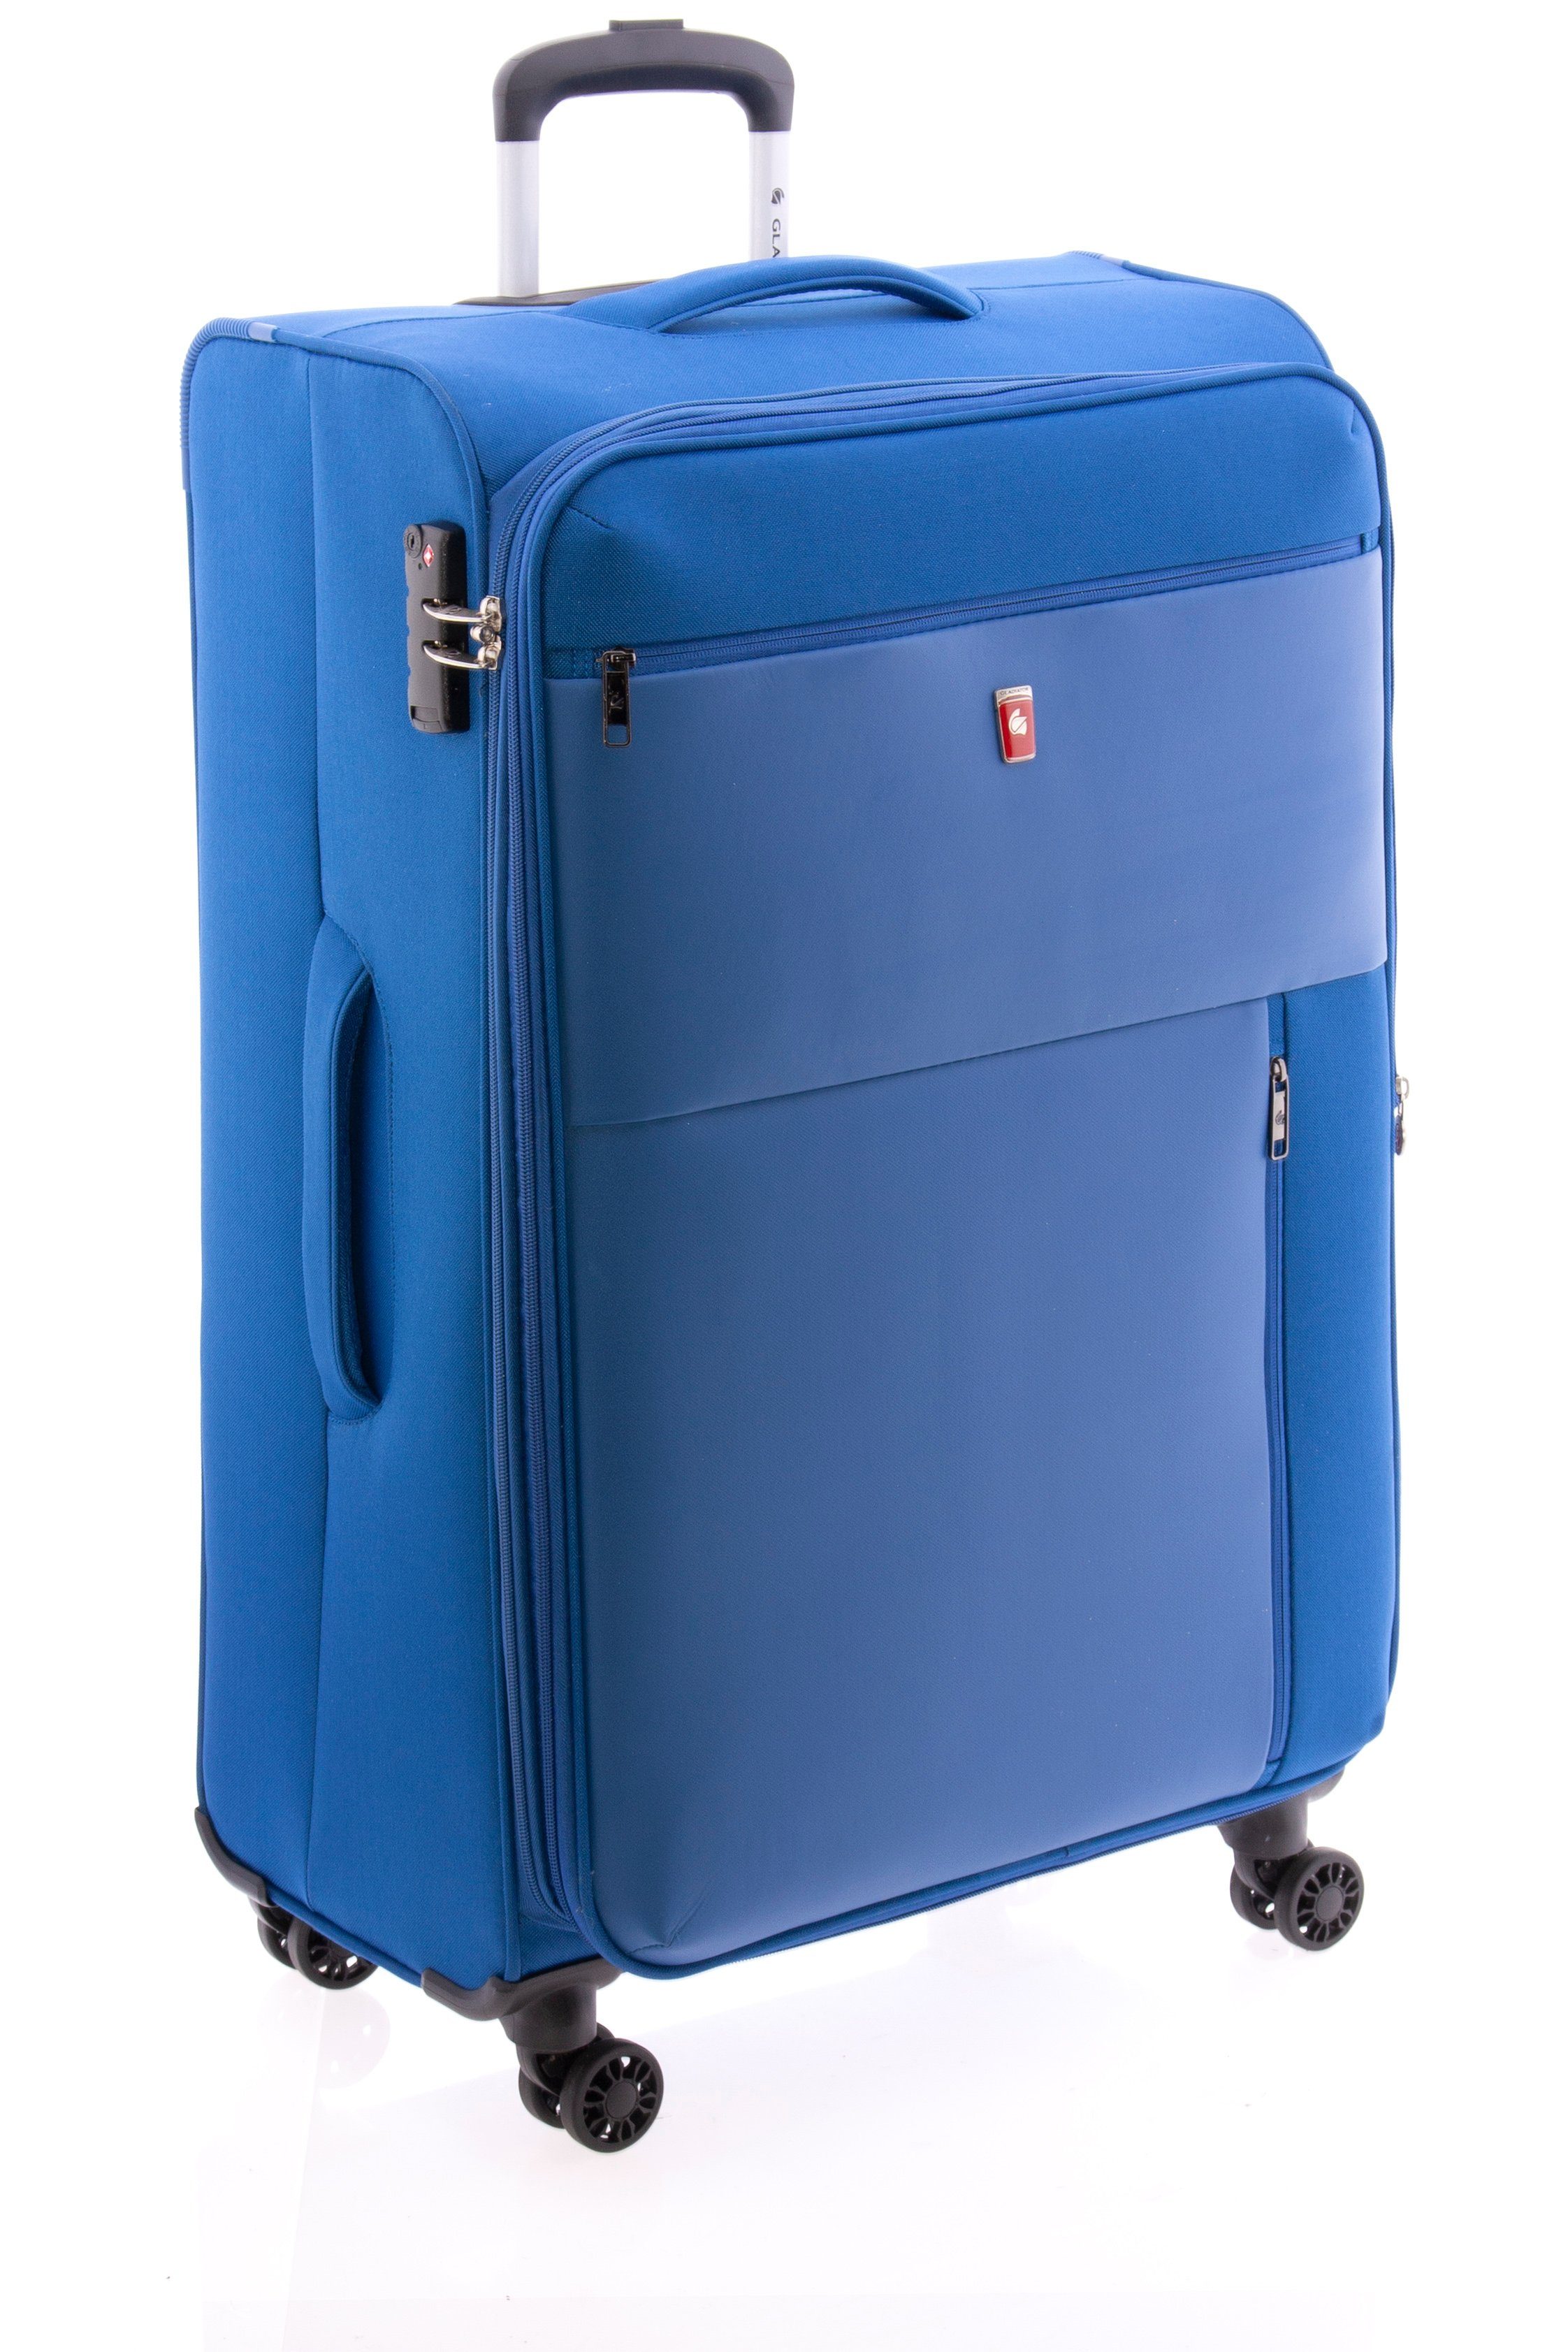 GLADIATOR Weichgepäck-Trolley XL - - kg, TSA-Schloss, div. 4 Rollen, 102/113 3,6 cm Farben 78 blau Liter, Volumen